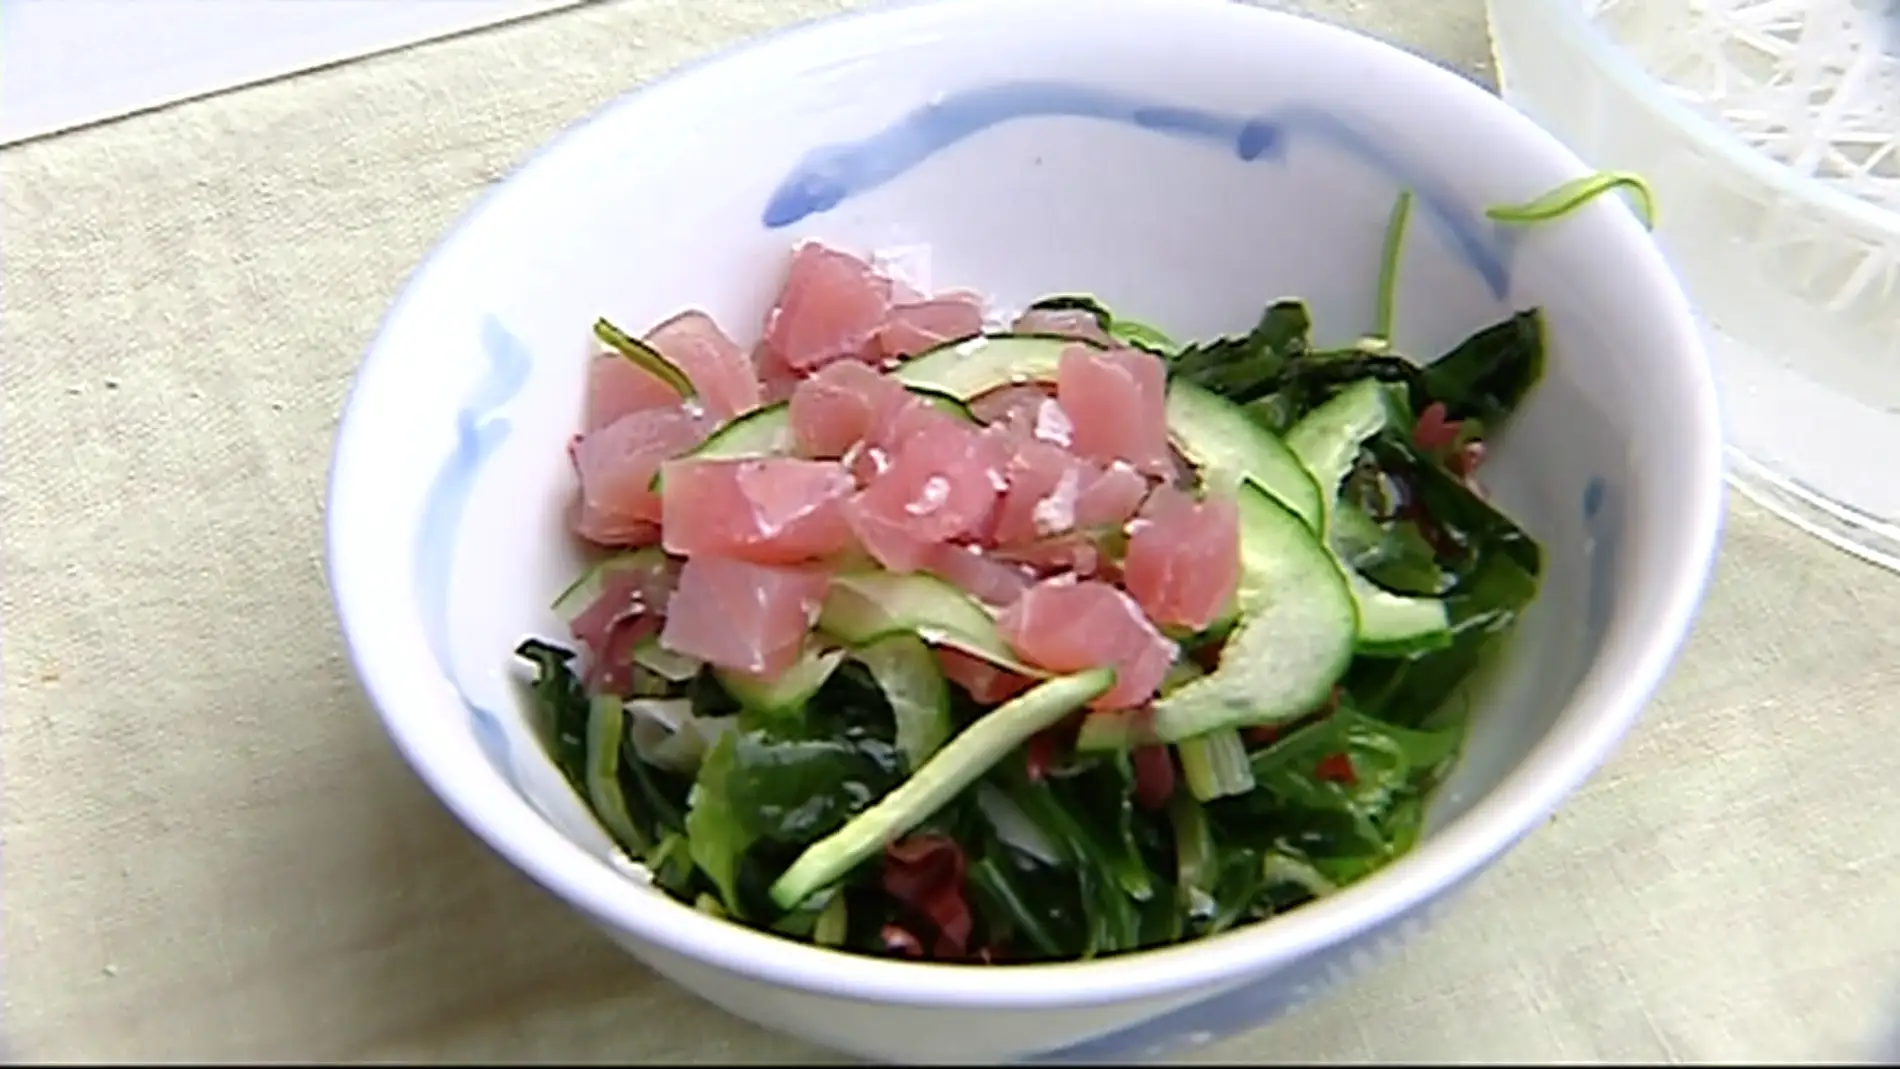 Ensalada de algas con un toque de atún: el plato ideal para este verano